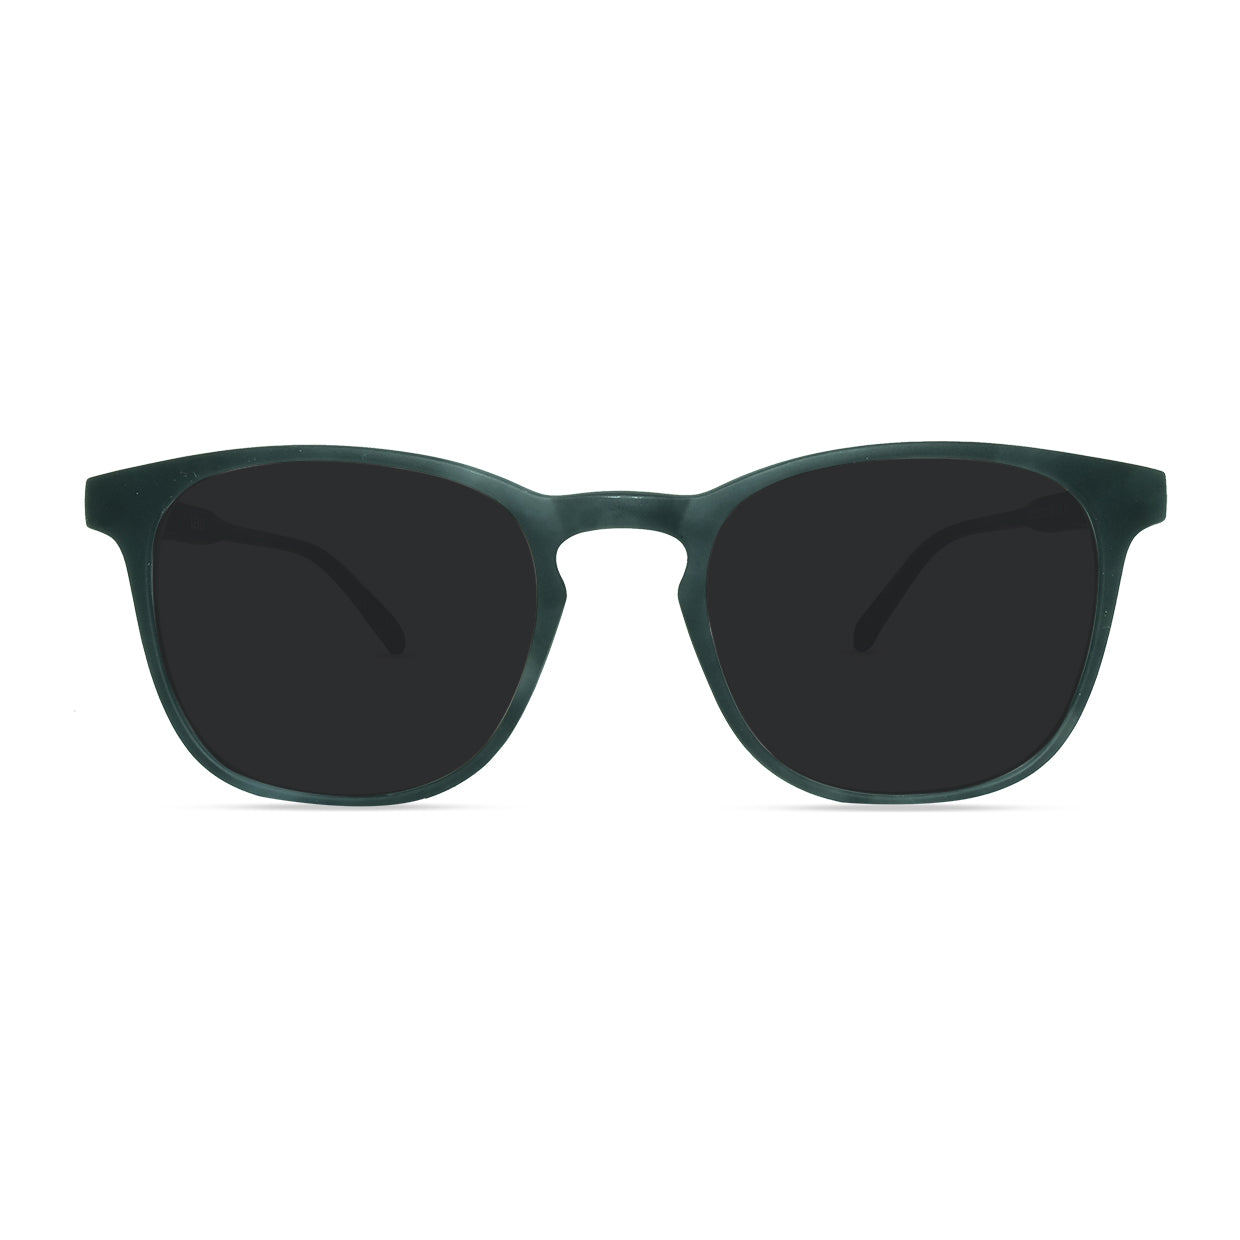 Fashionable Glasses in Black / Sun